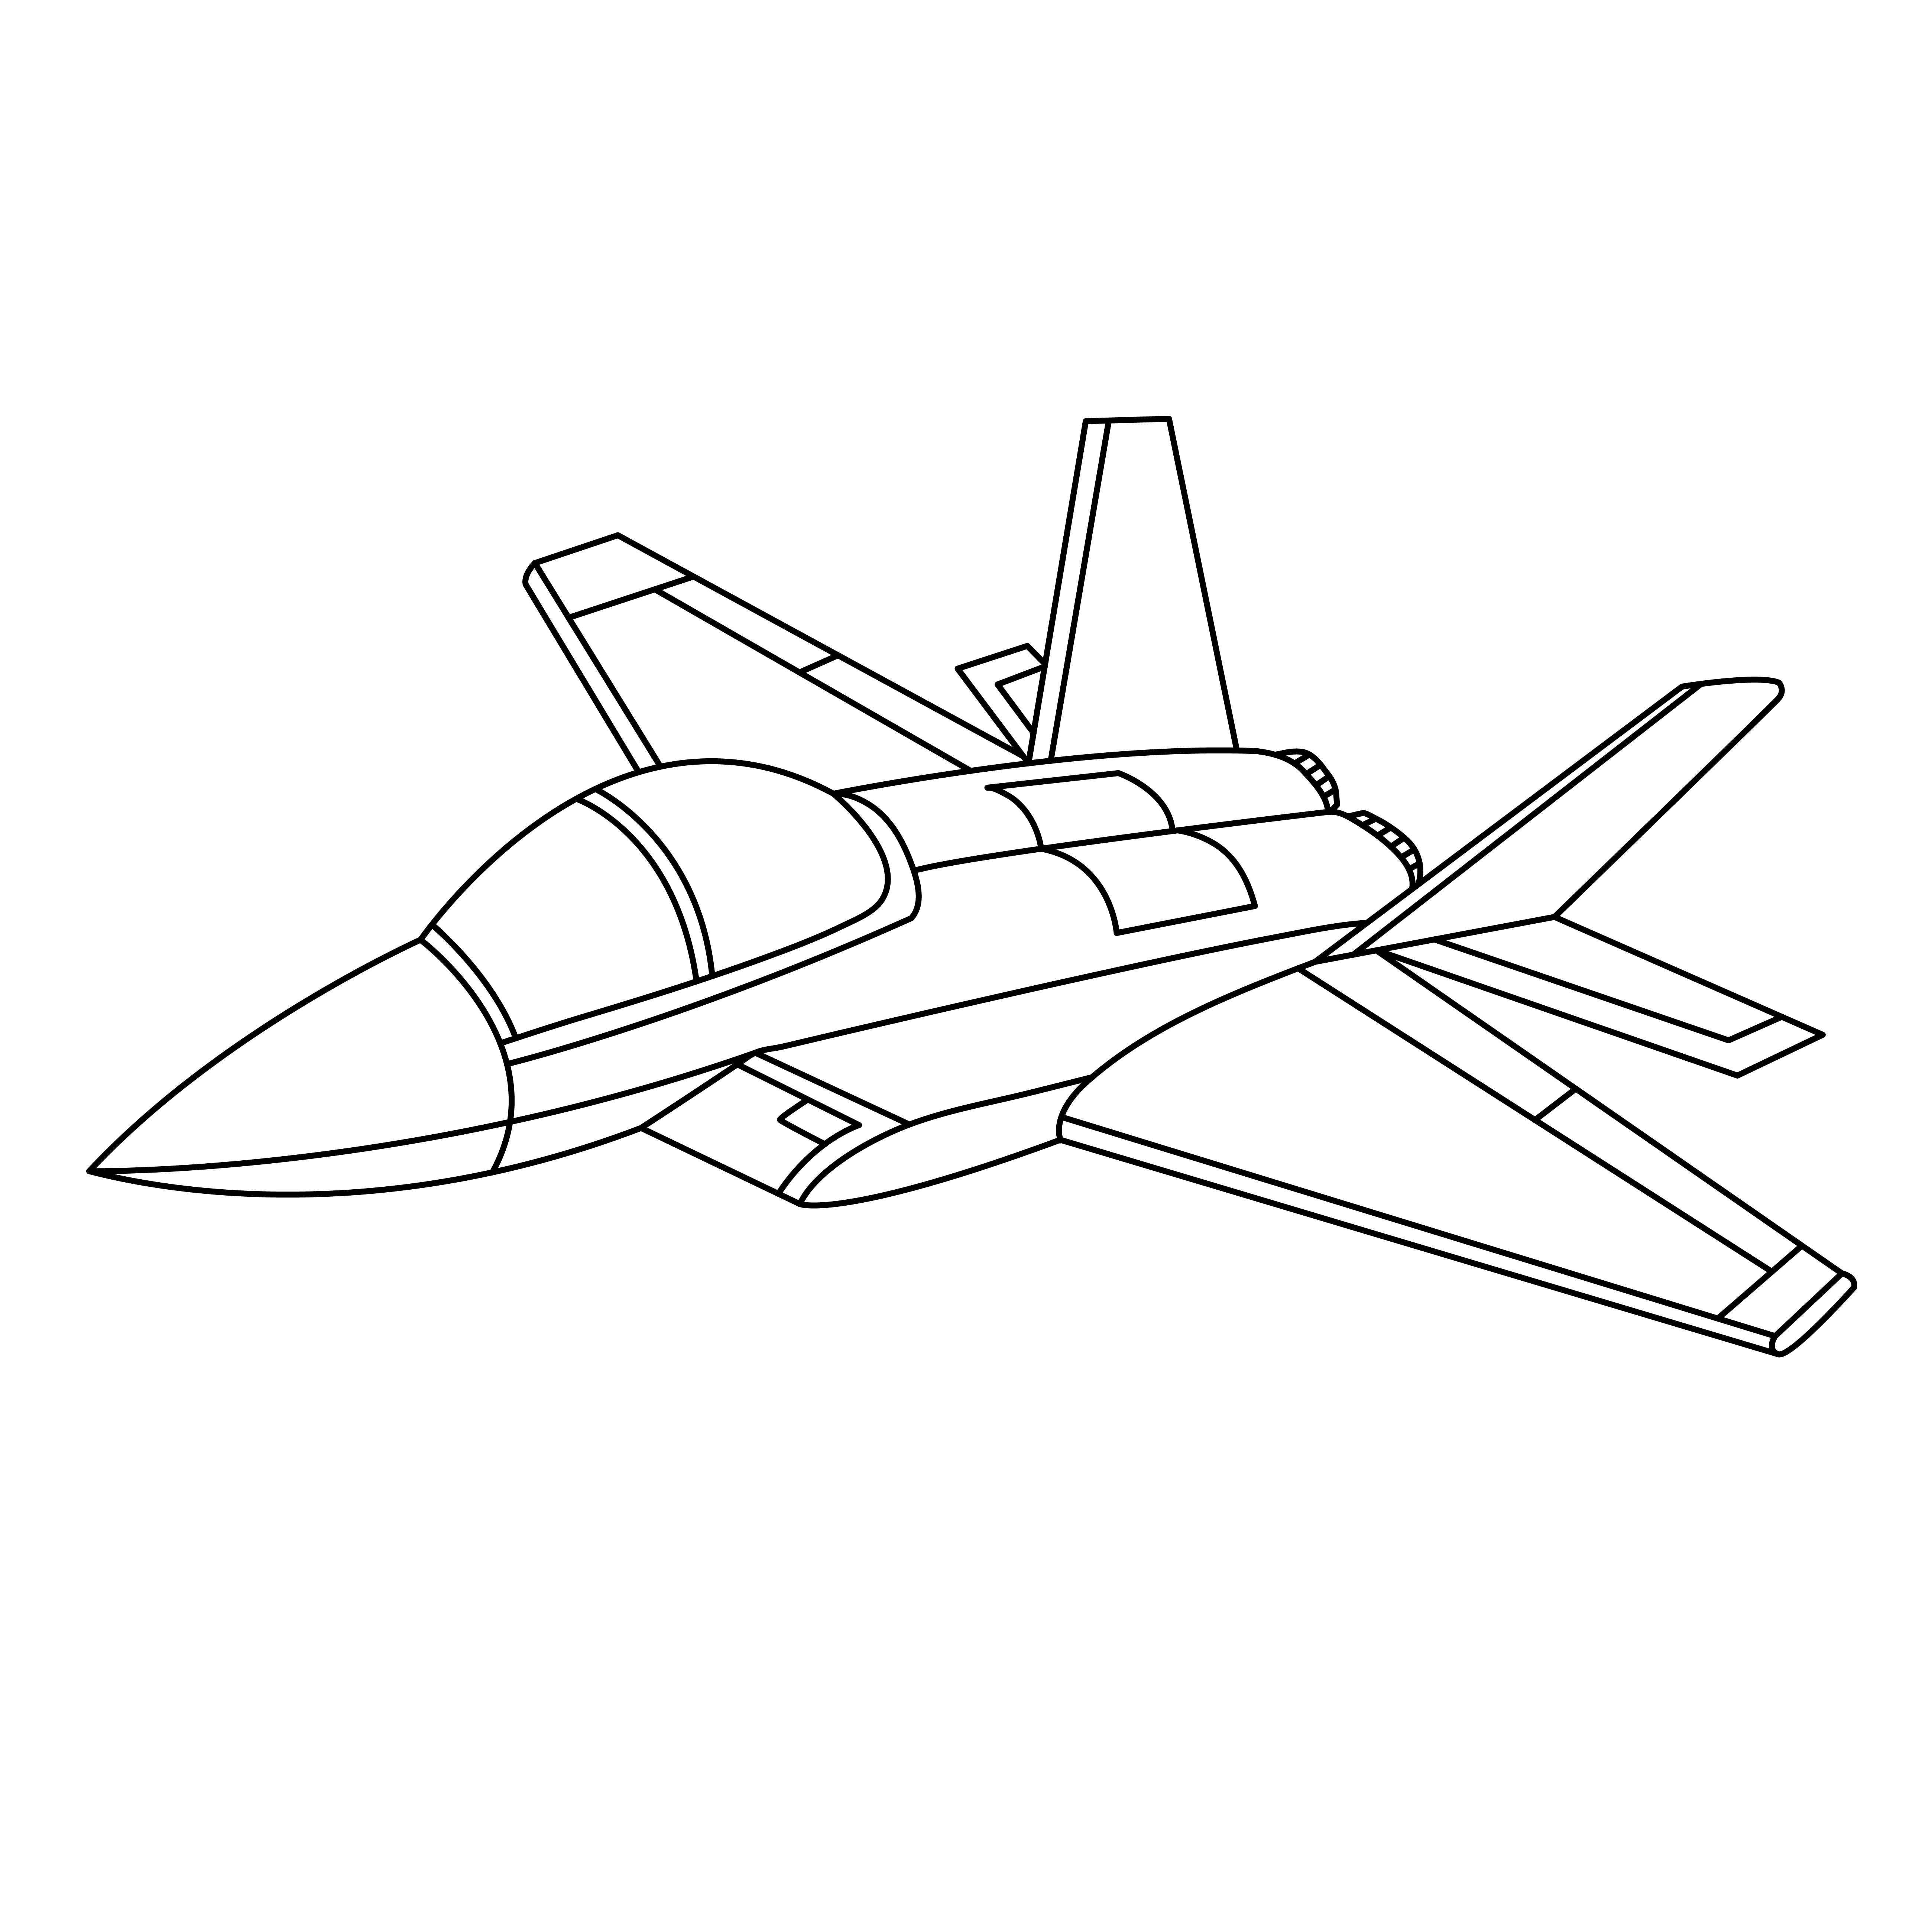 Раскраска истребитель «Авиационный охотник» формата А4 в высоком качестве